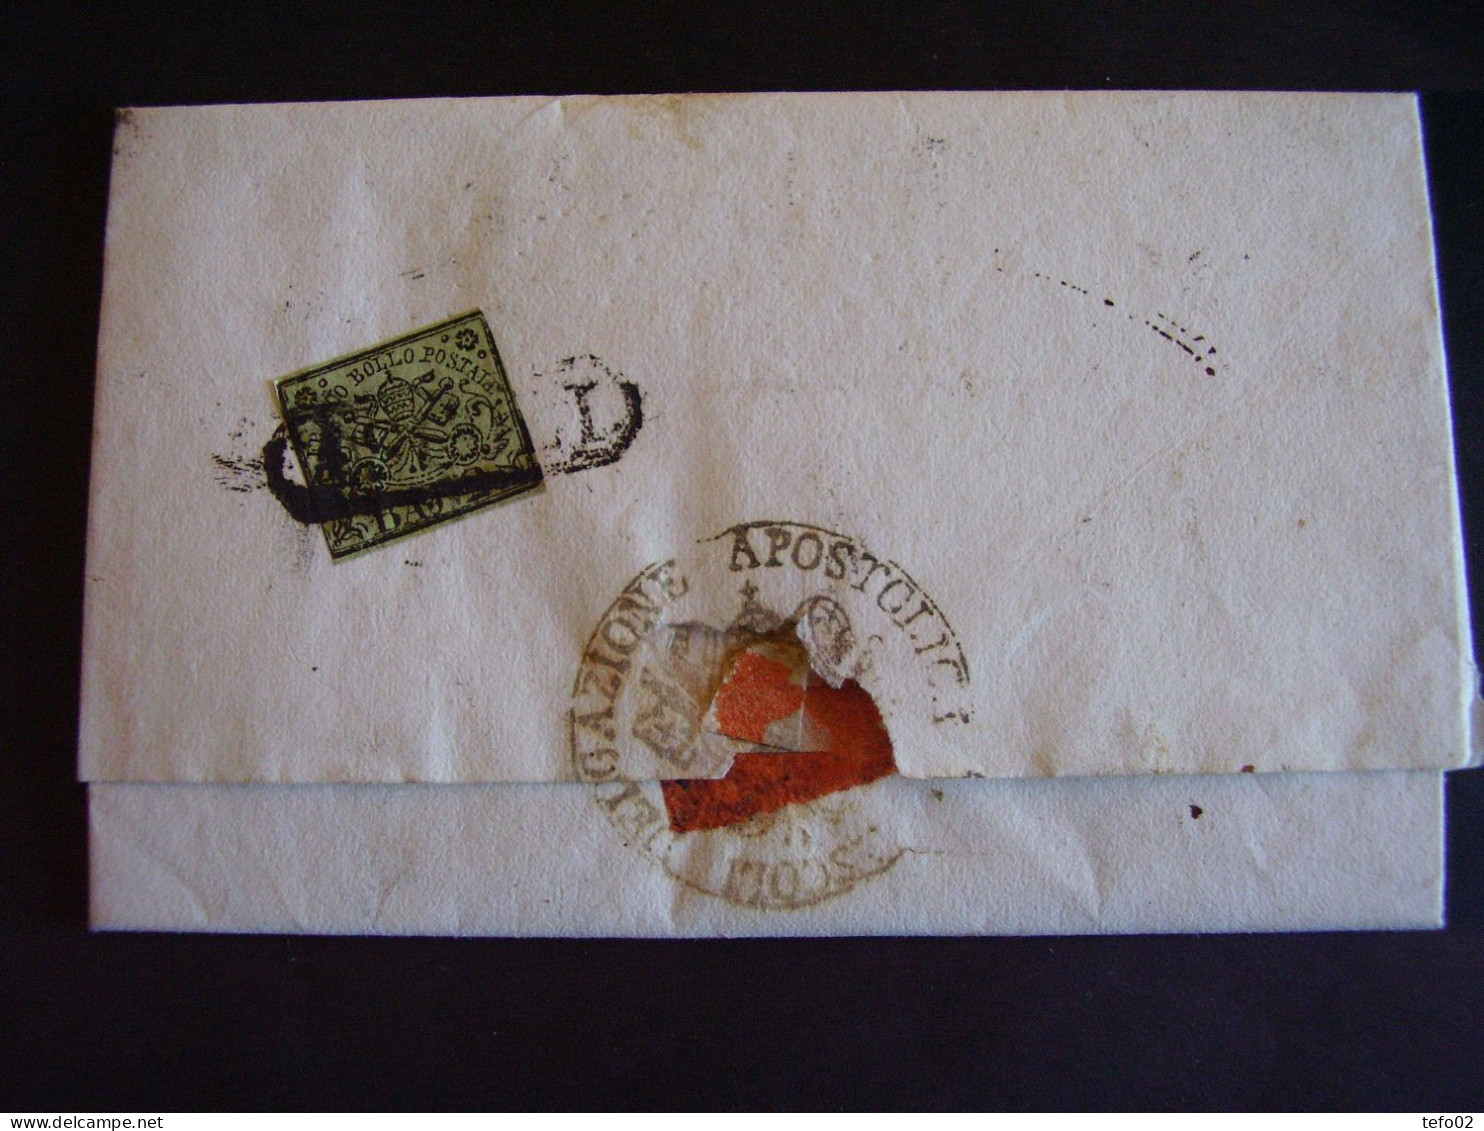 Storia postale mondiale. Dalle prefilateliche ai giorni nostri